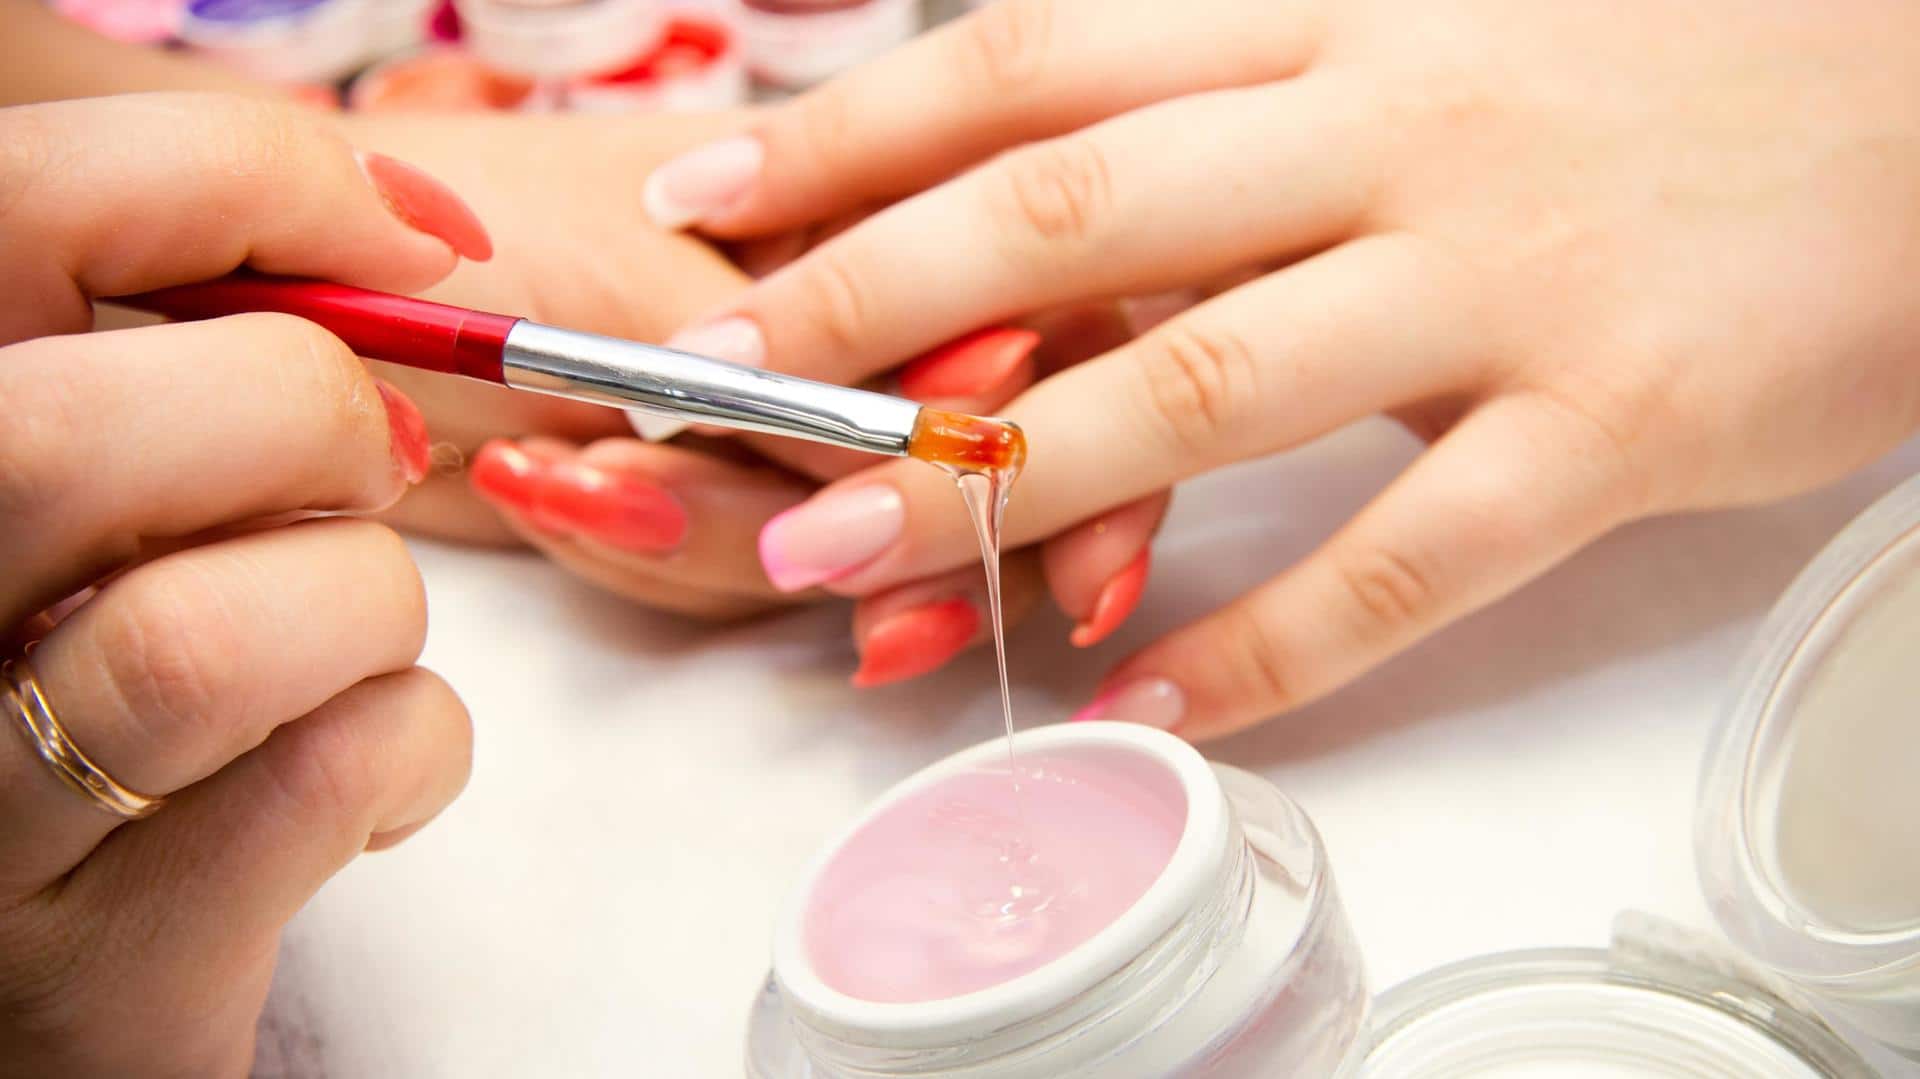 Nails by Nature - Non toxic gel nail polish brand